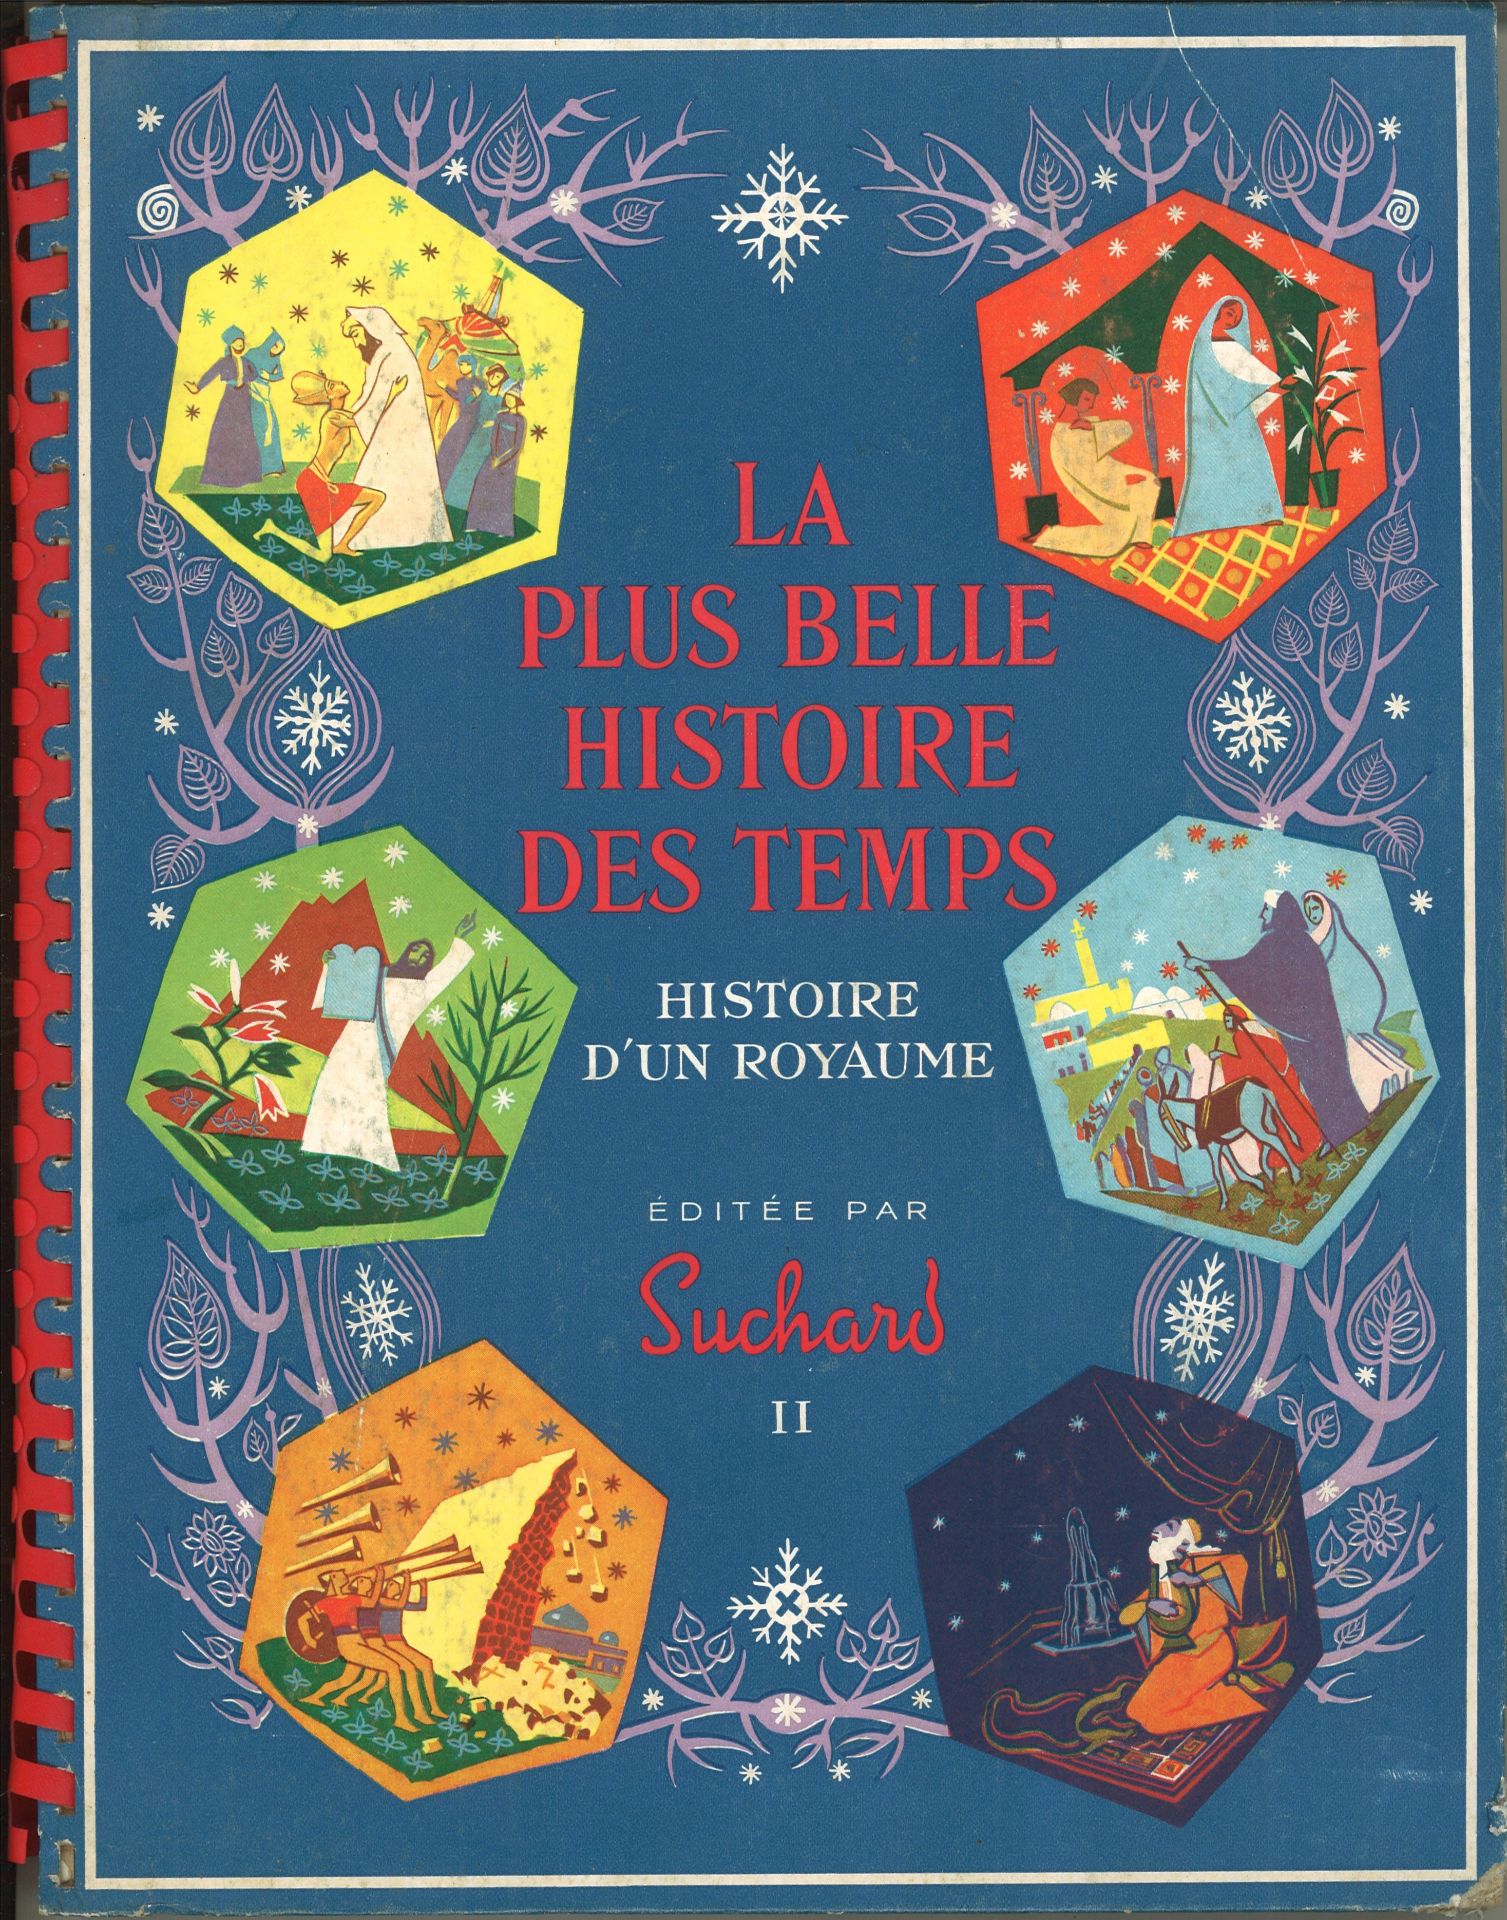 "La plus belle histoire des temps", Histoire d´un royaume, editée par Suchard II, Juli 1958,